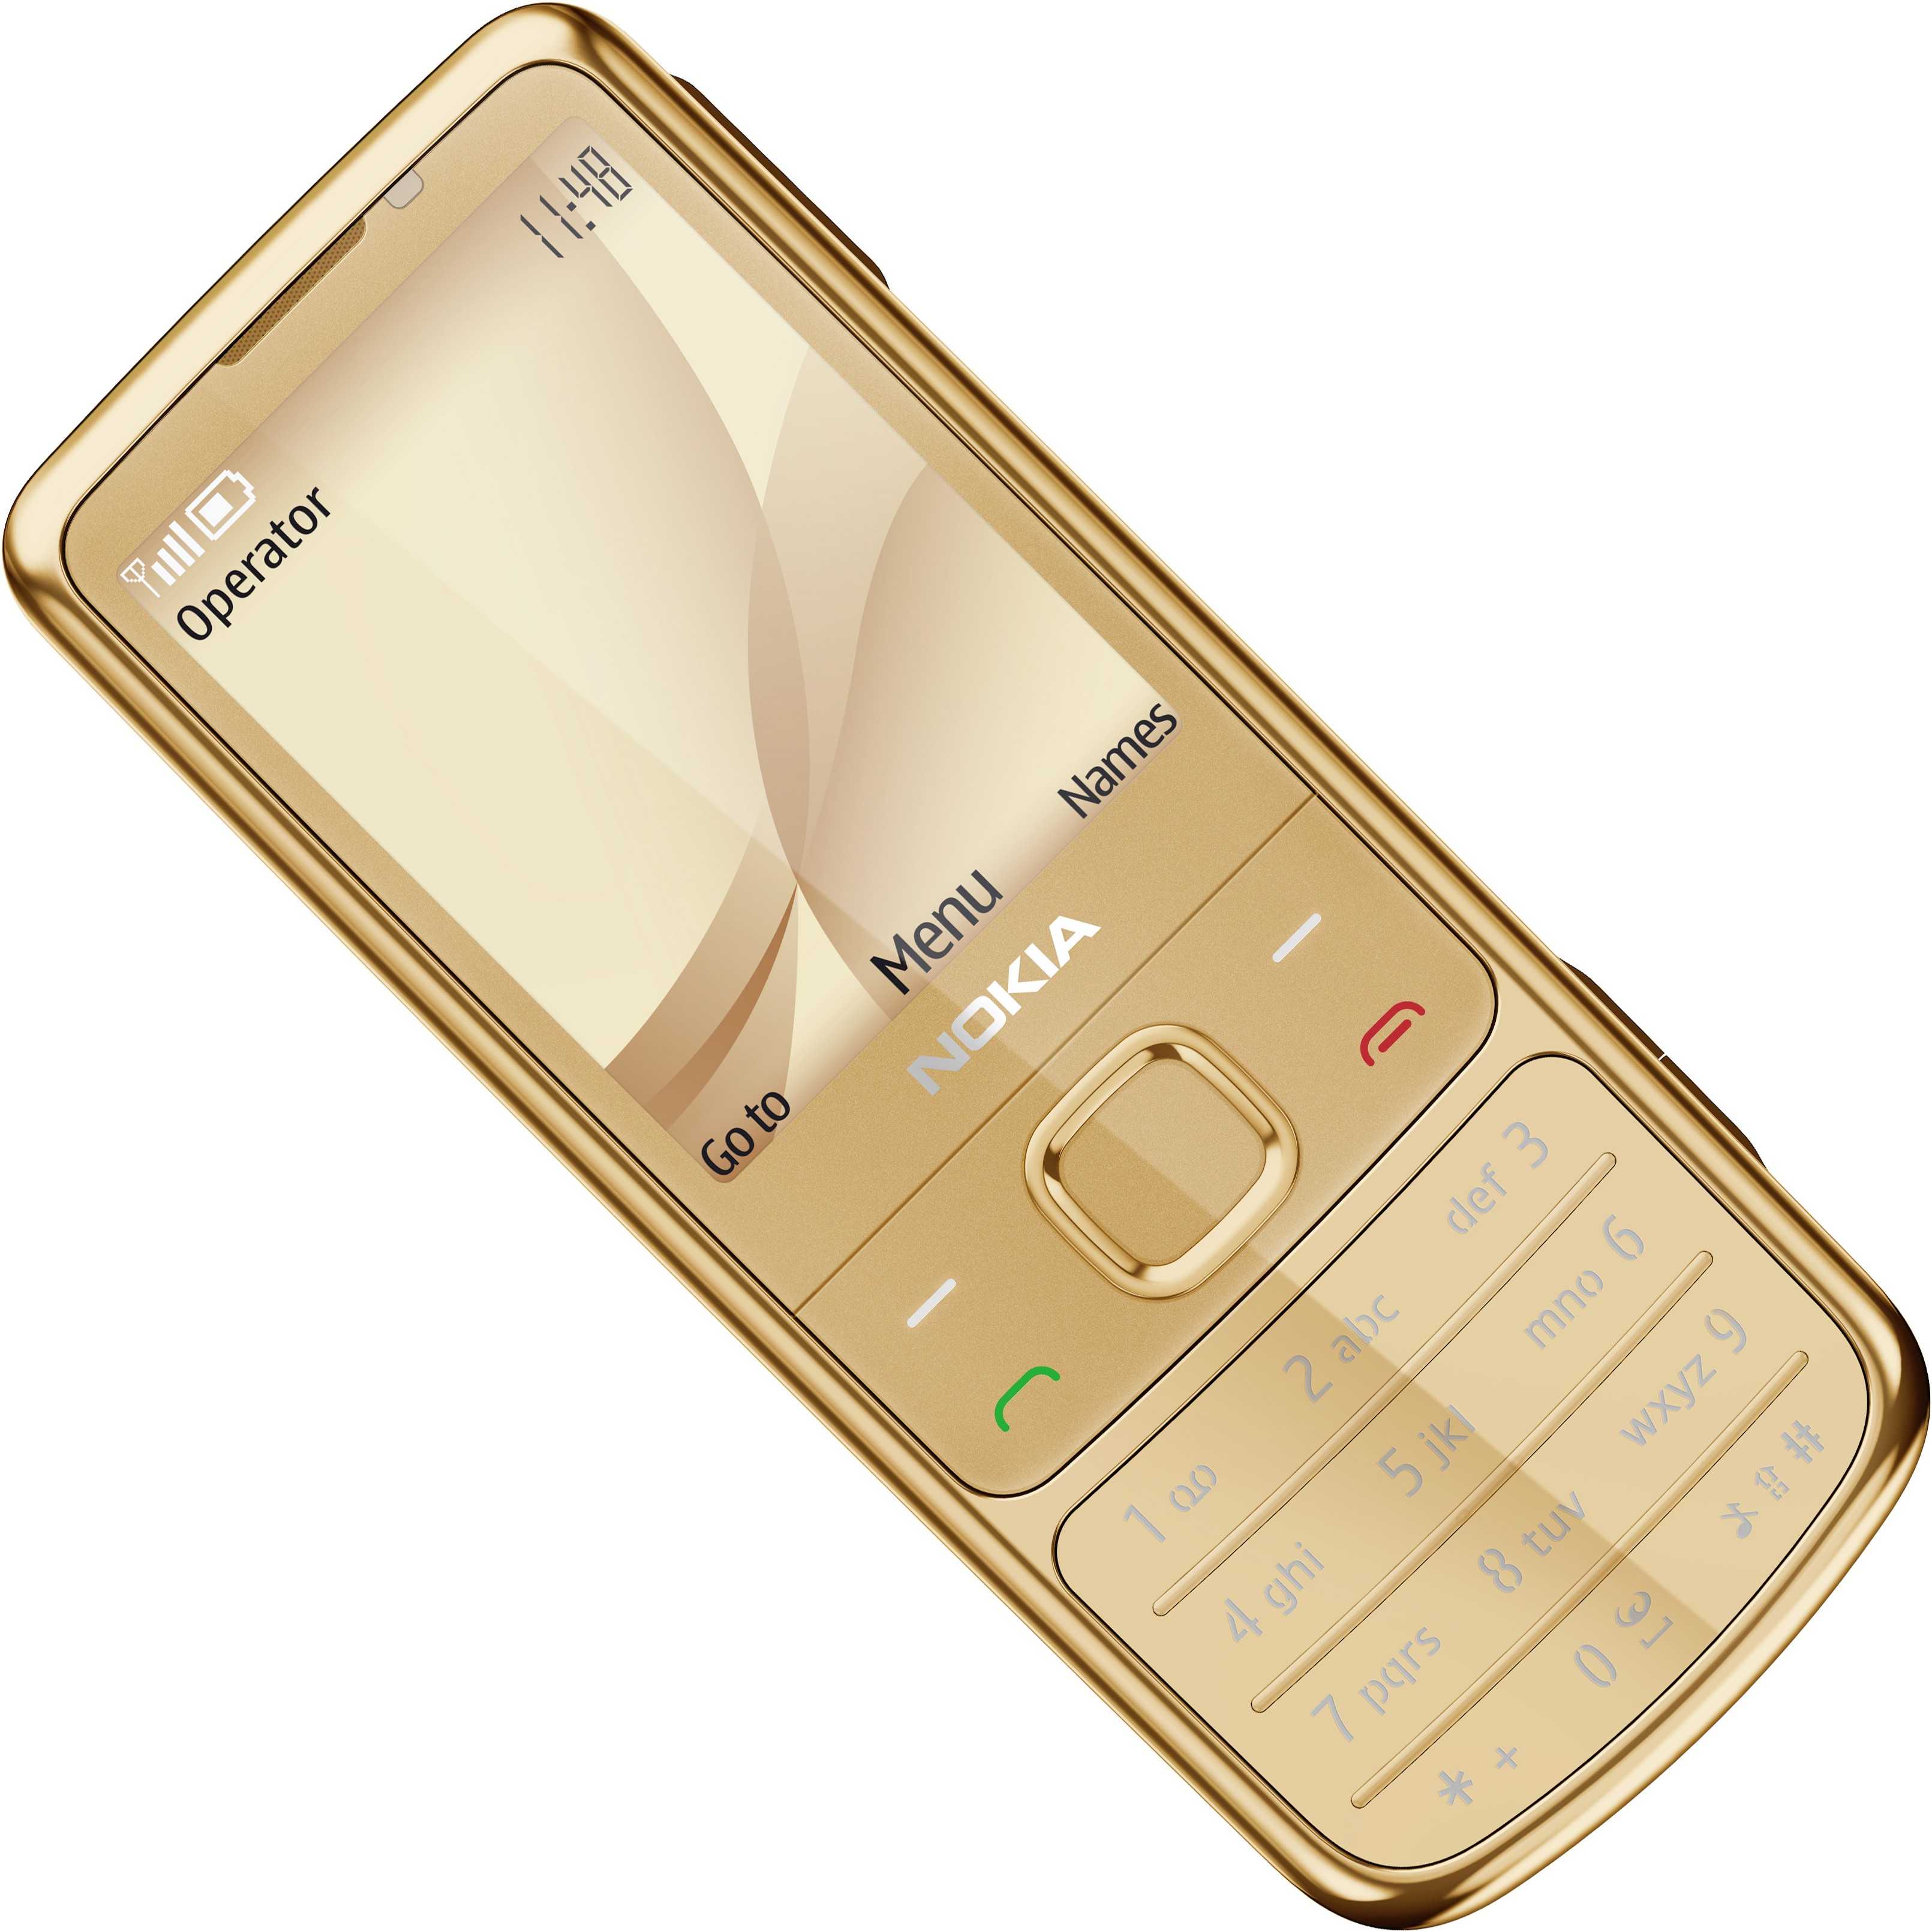 Nokia bh-212 - купить , скидки, цена, отзывы, обзор, характеристики - bluetooth гарнитуры и наушники